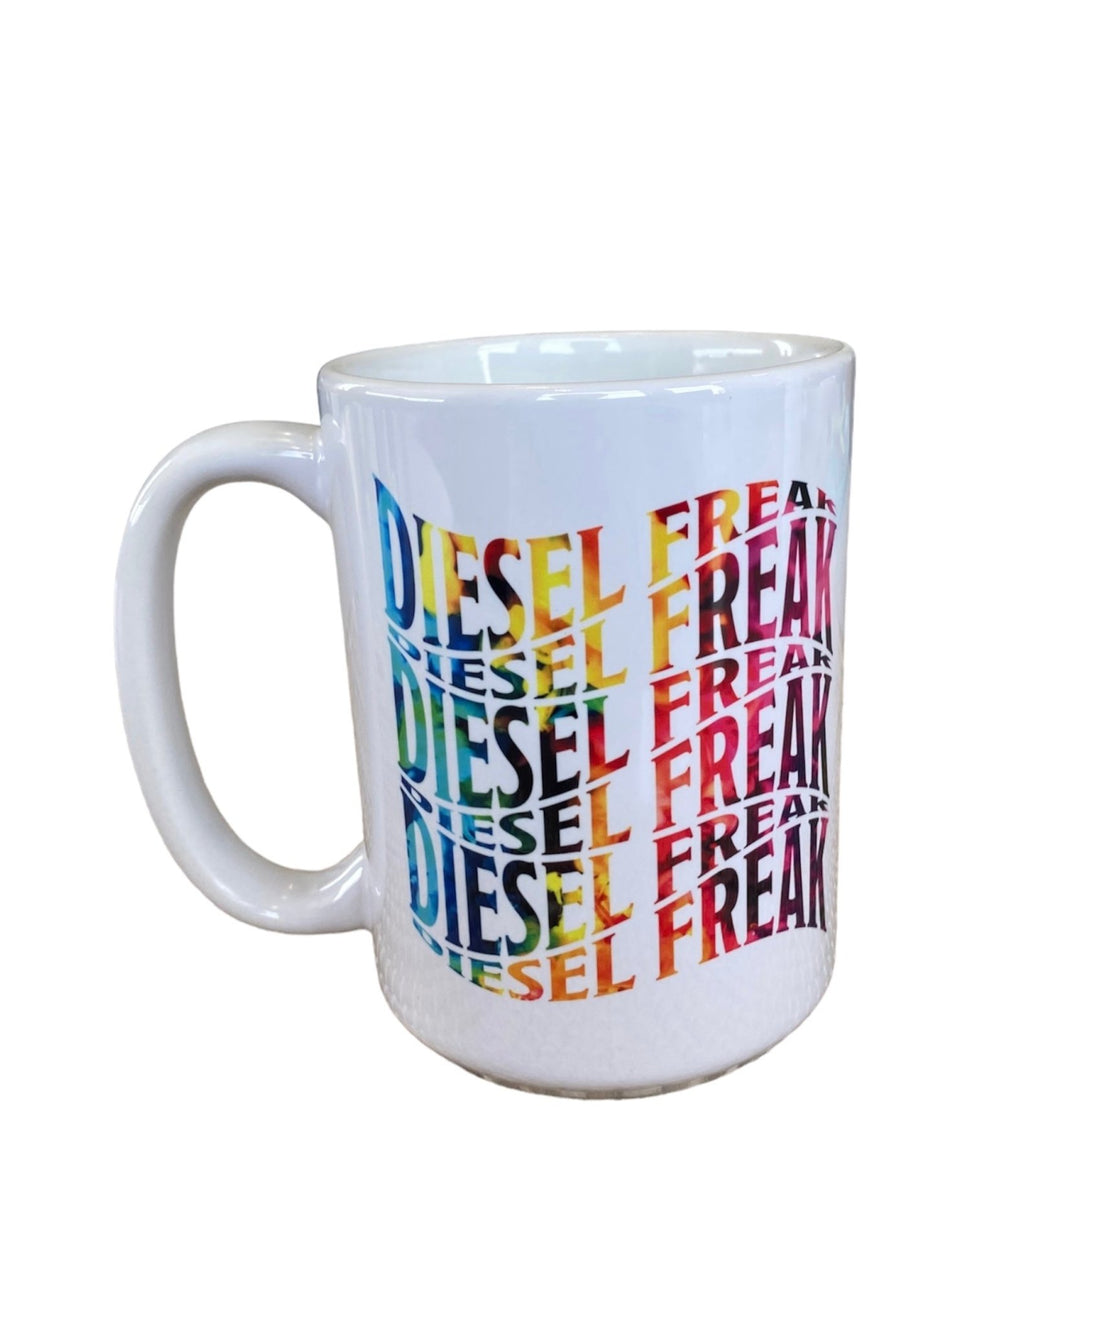 Rainbow Swoosh Coffee Mug - Diesel Freak